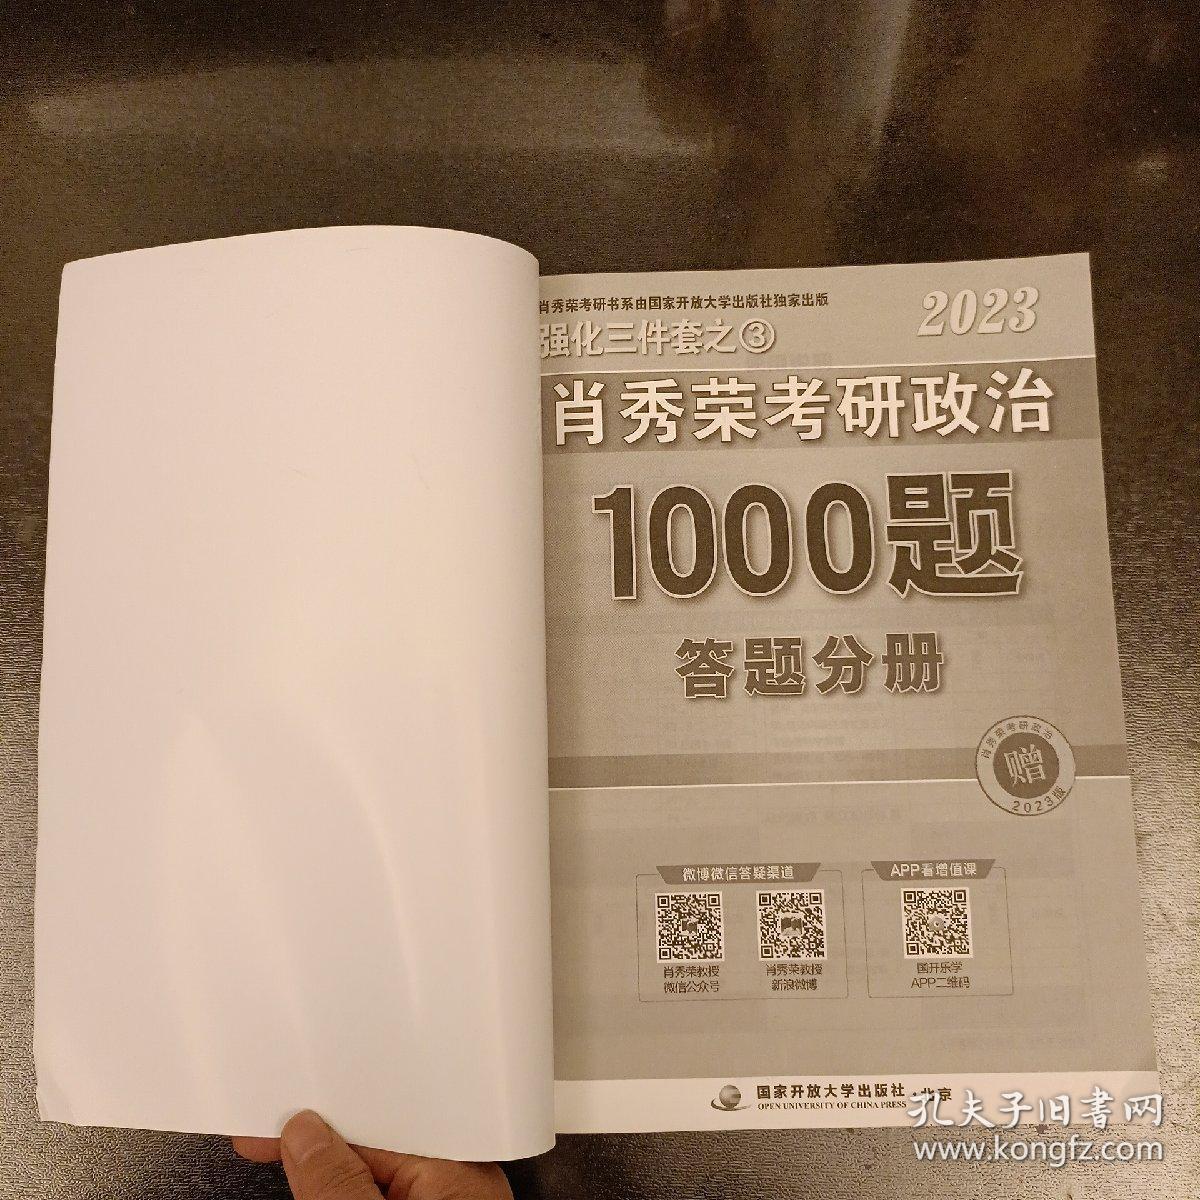 2023年肖秀荣考研政治题1000题答题分册    (前屋61B)